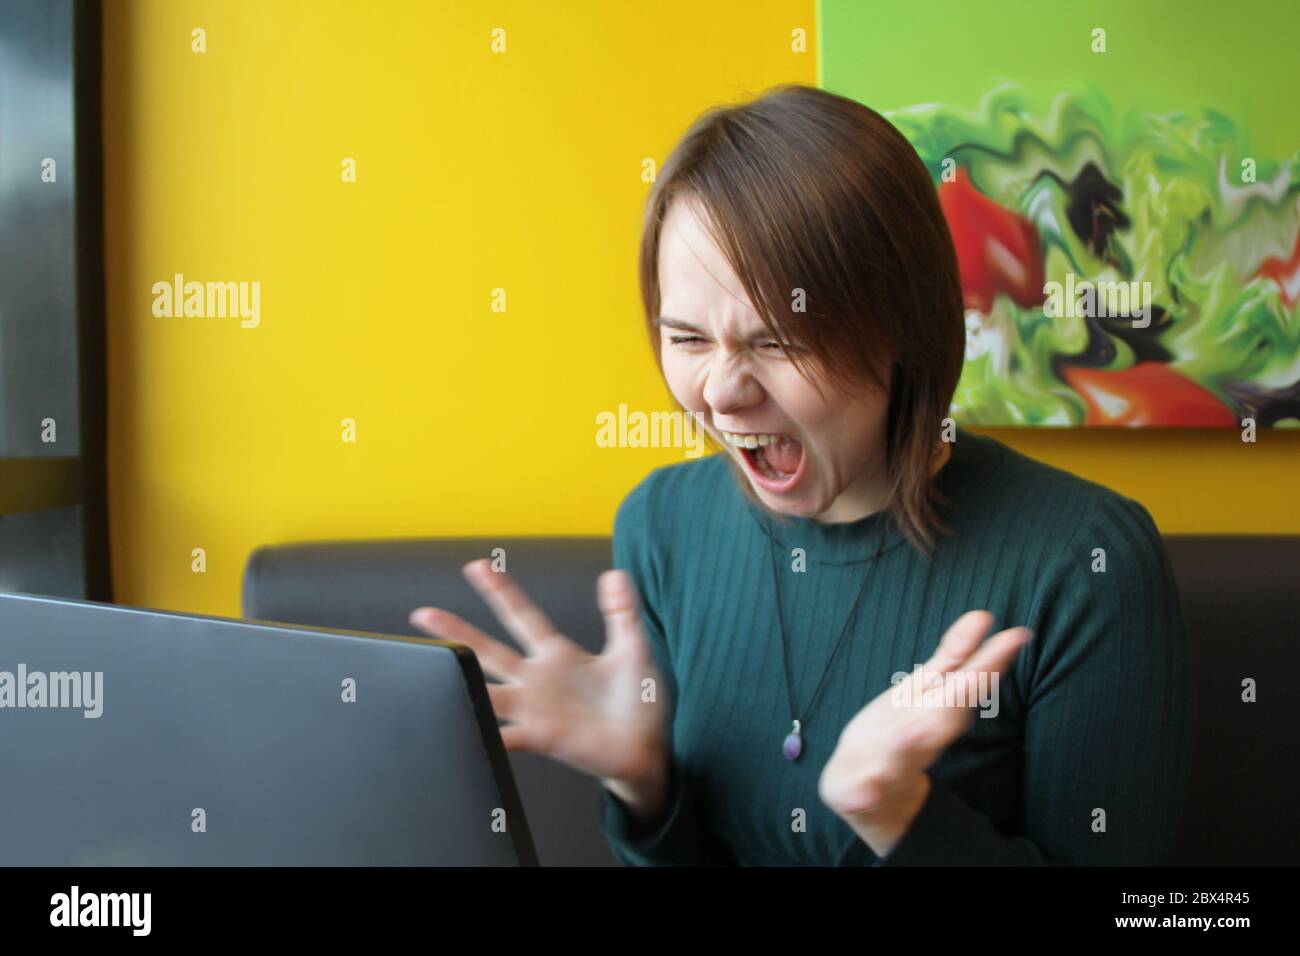 Una ragazza con un'espressione furiosa di tensione sul suo volto si siede lavorando a un computer portatile a un tavolo in un bar su un divano marrone contro una parete gialla. Guarda lo schermo del computer, urla e fa ondate le mani. Foto Stock